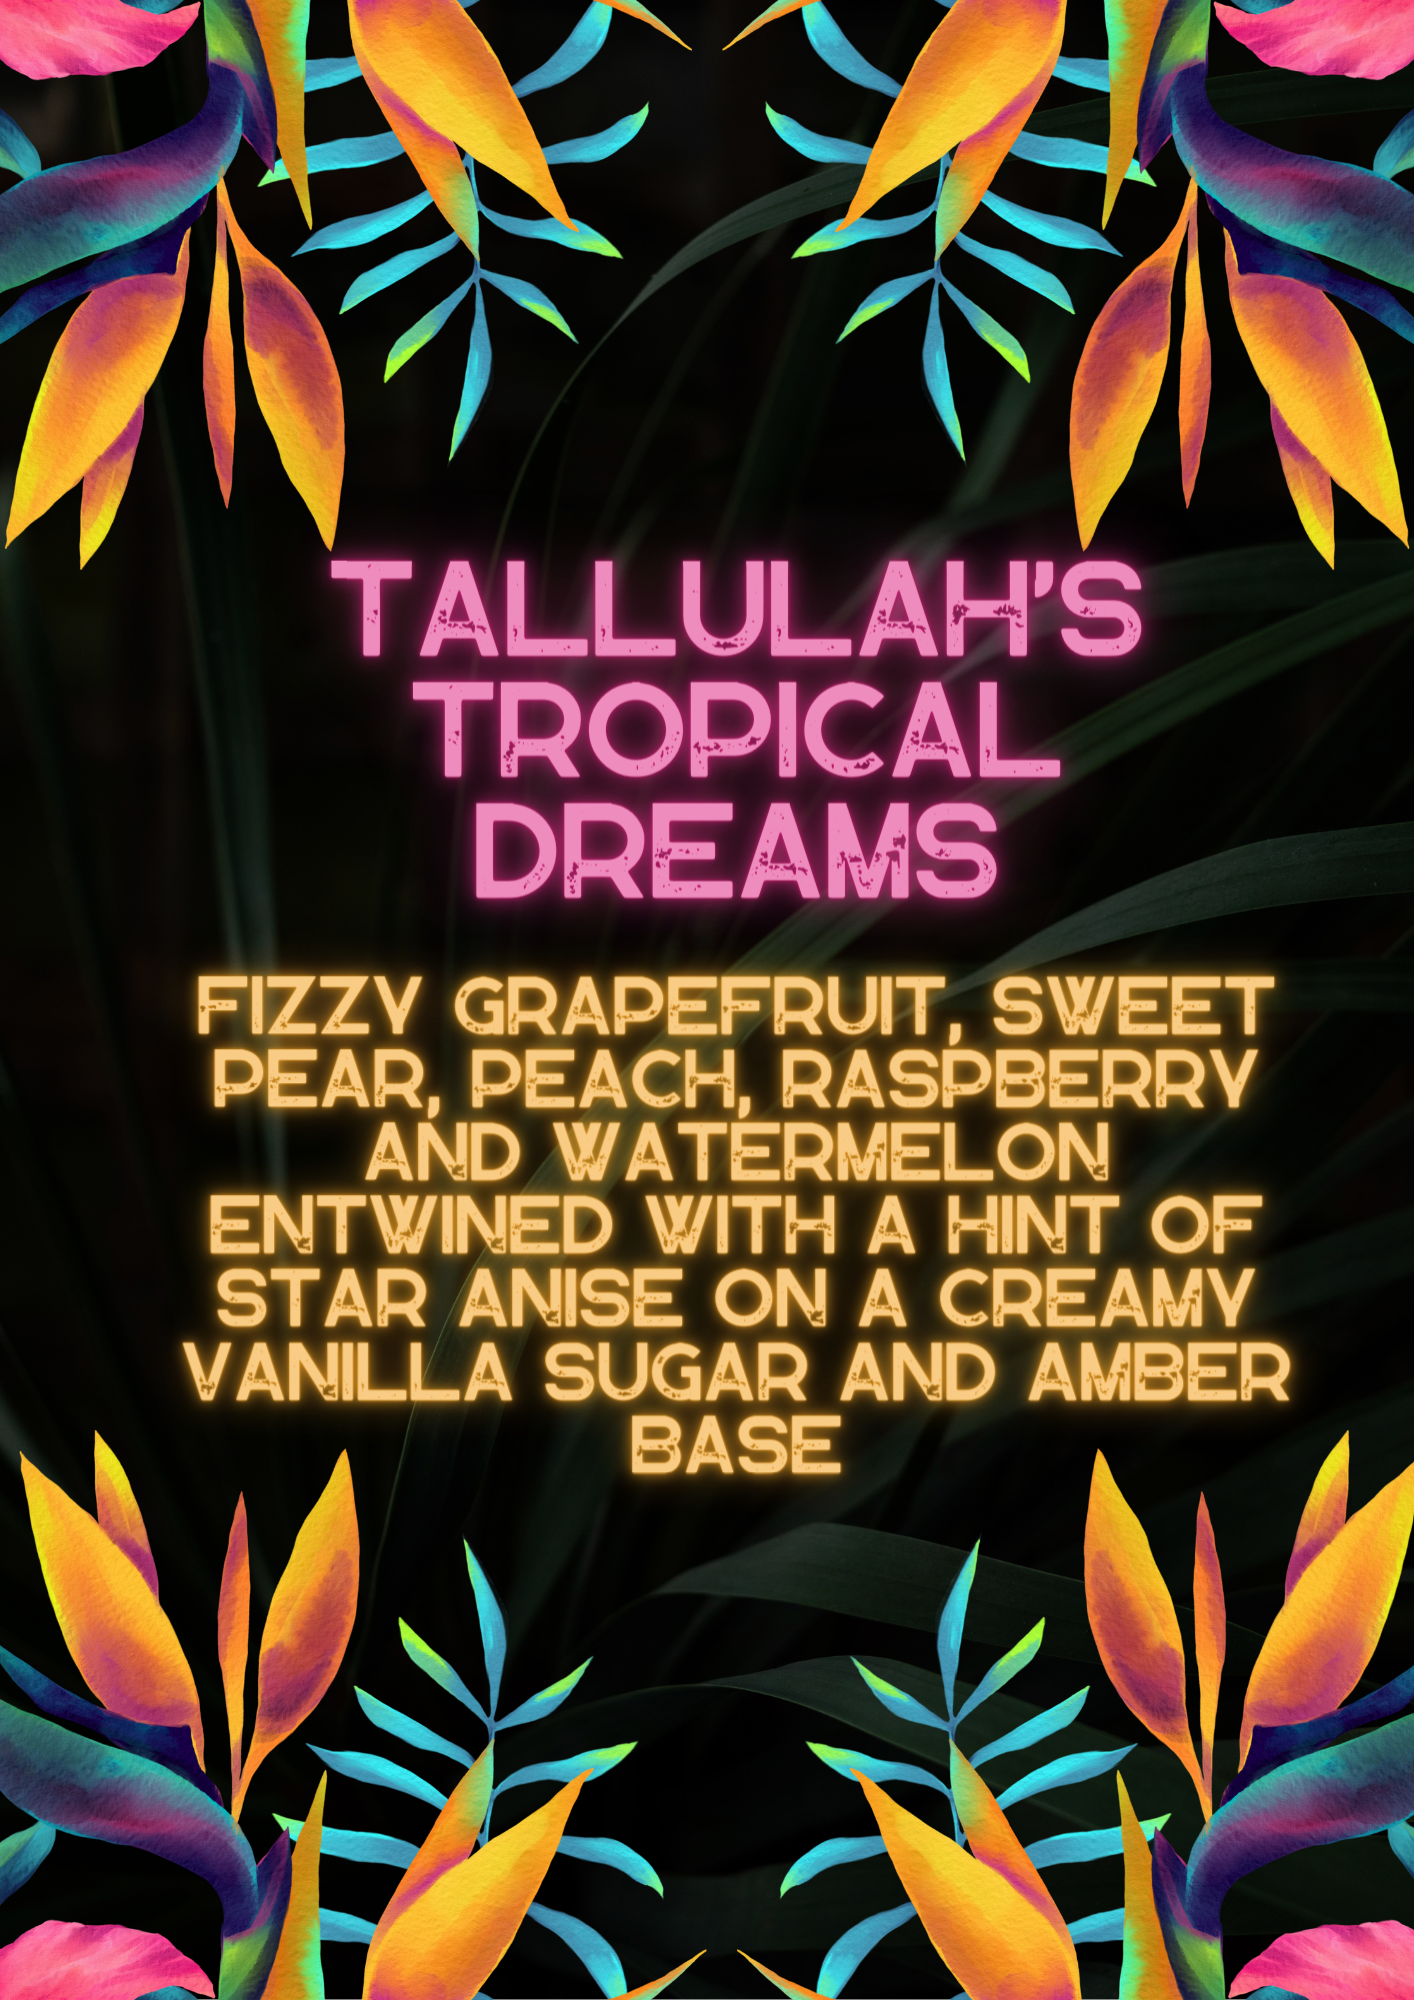 TALLULAH’S TROPICAL DREAMS SNAPBAR